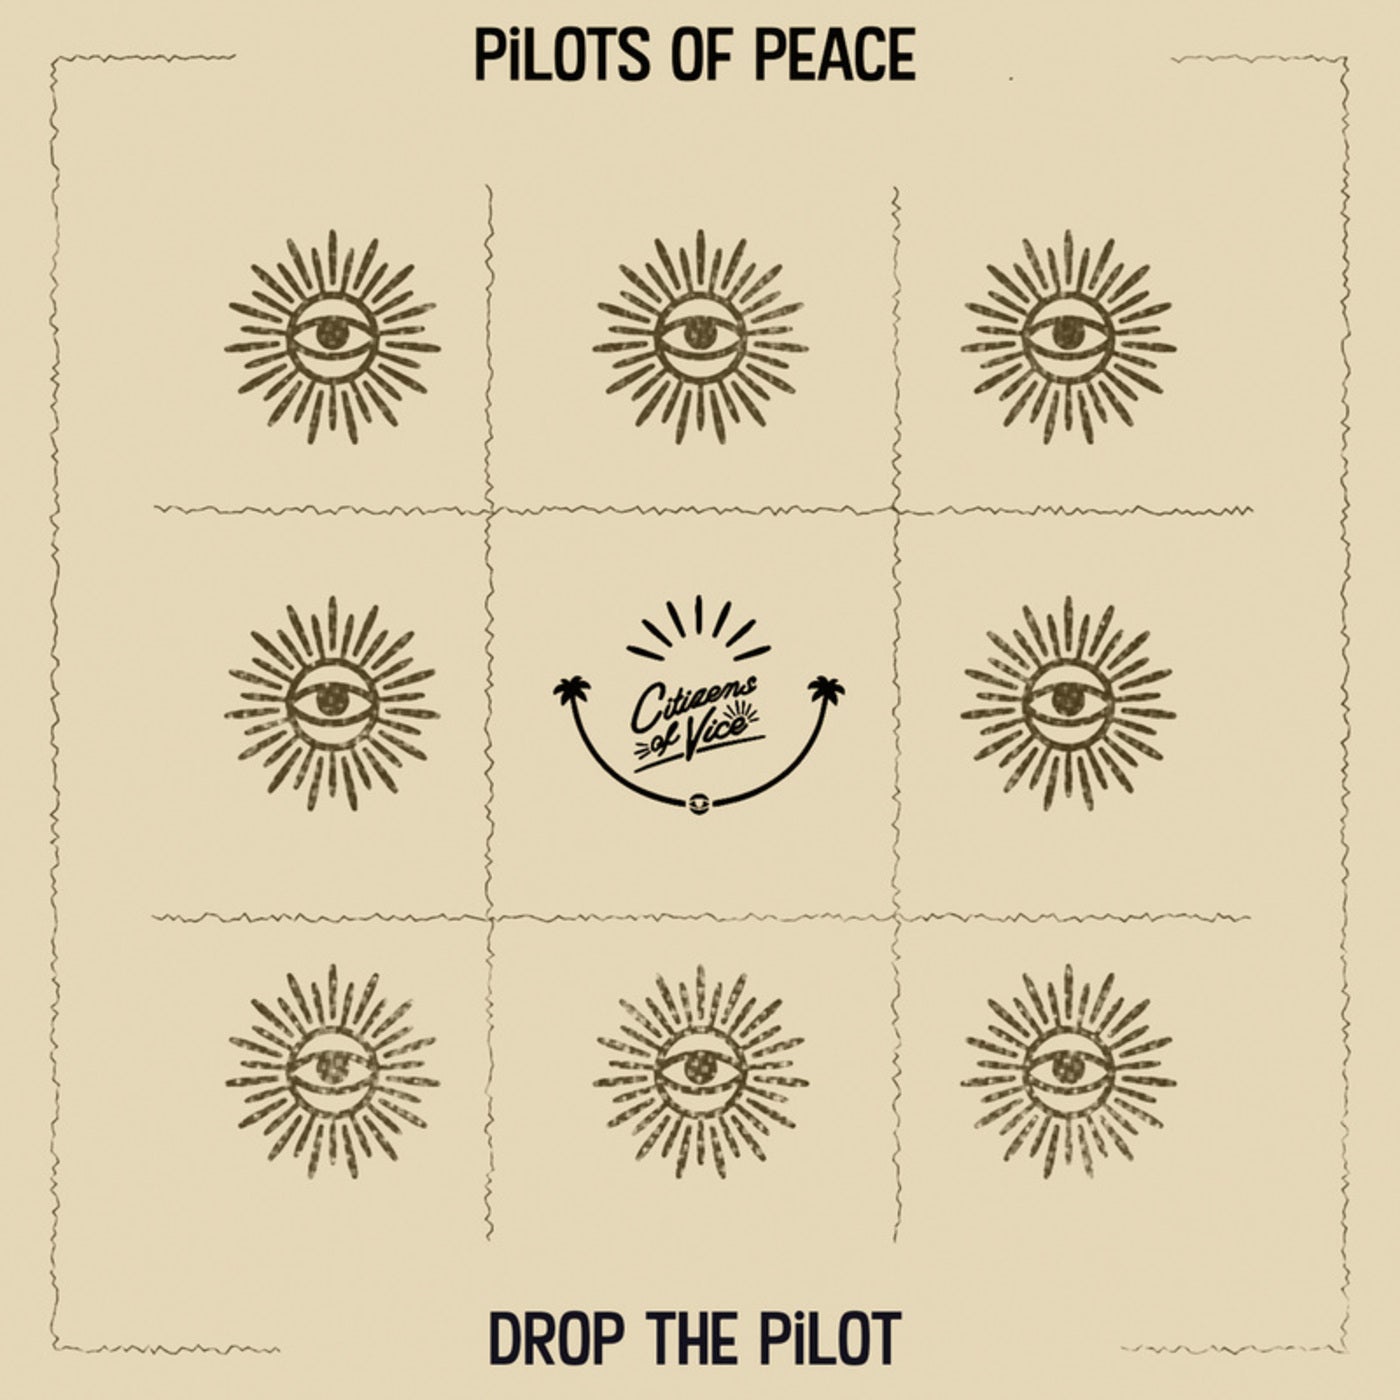 Drop The Pilot